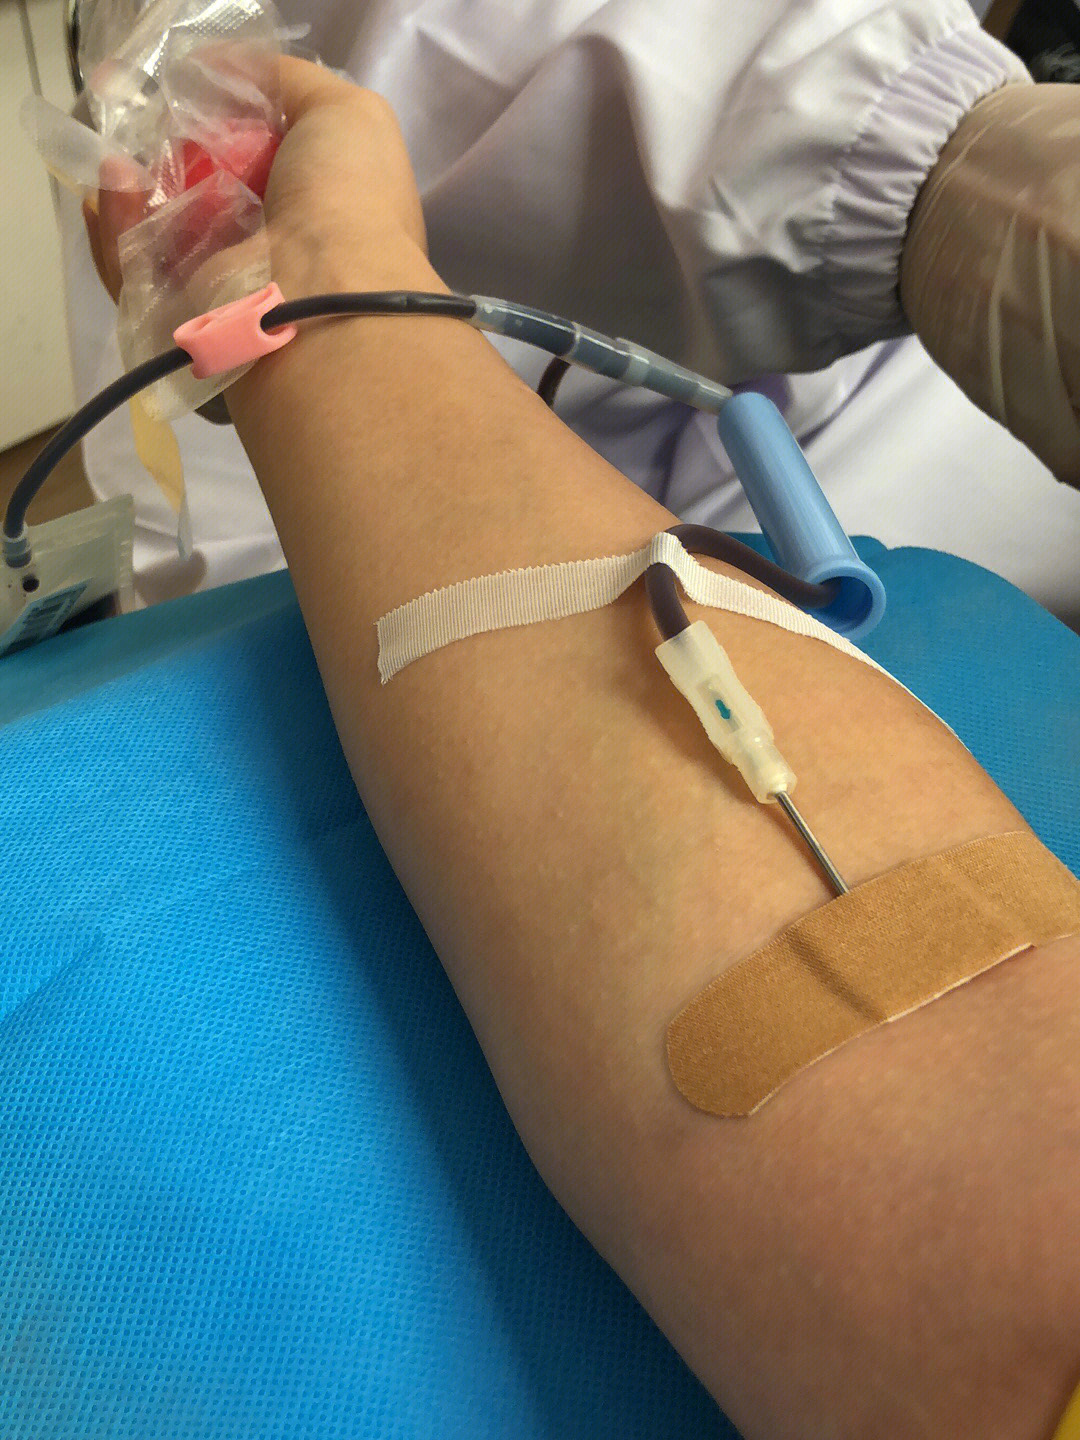 无偿献血针头图片